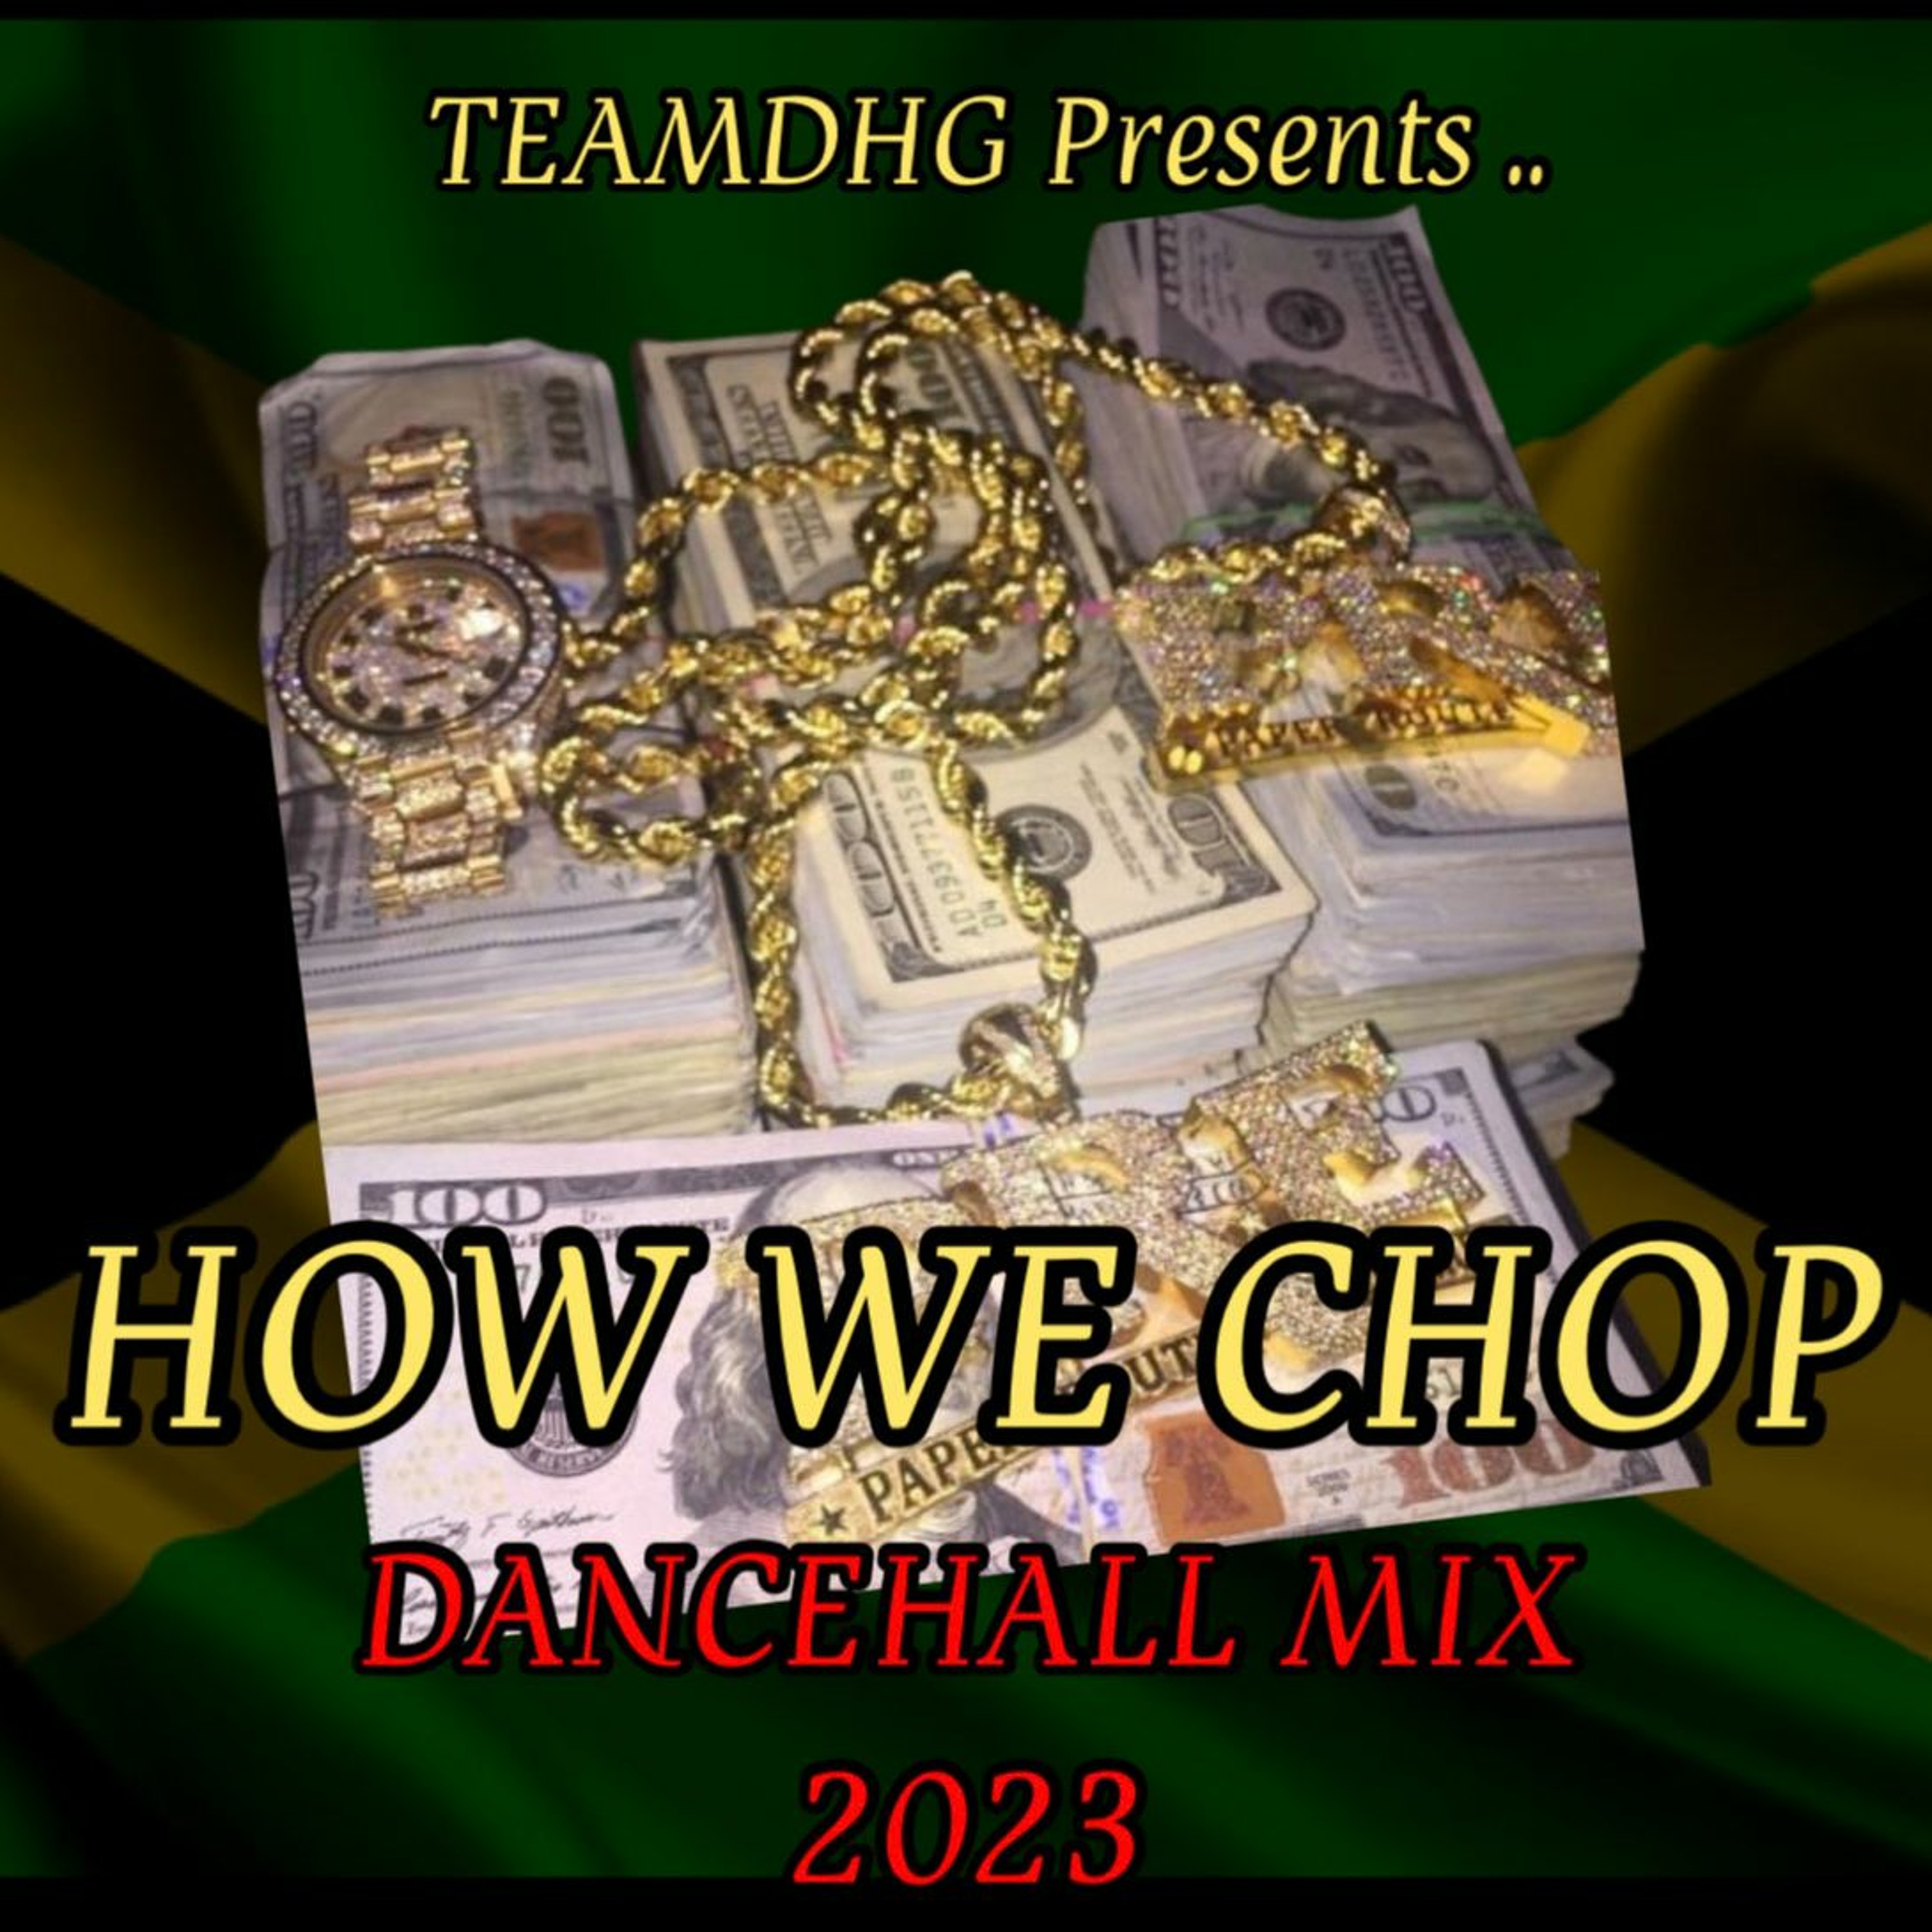 HOW WE CHOP DANCEHALL MIX 2023 FT VybzKartel,Squash,Kraff,Valiant, Tommylee, Skeng & more @djmega_uk